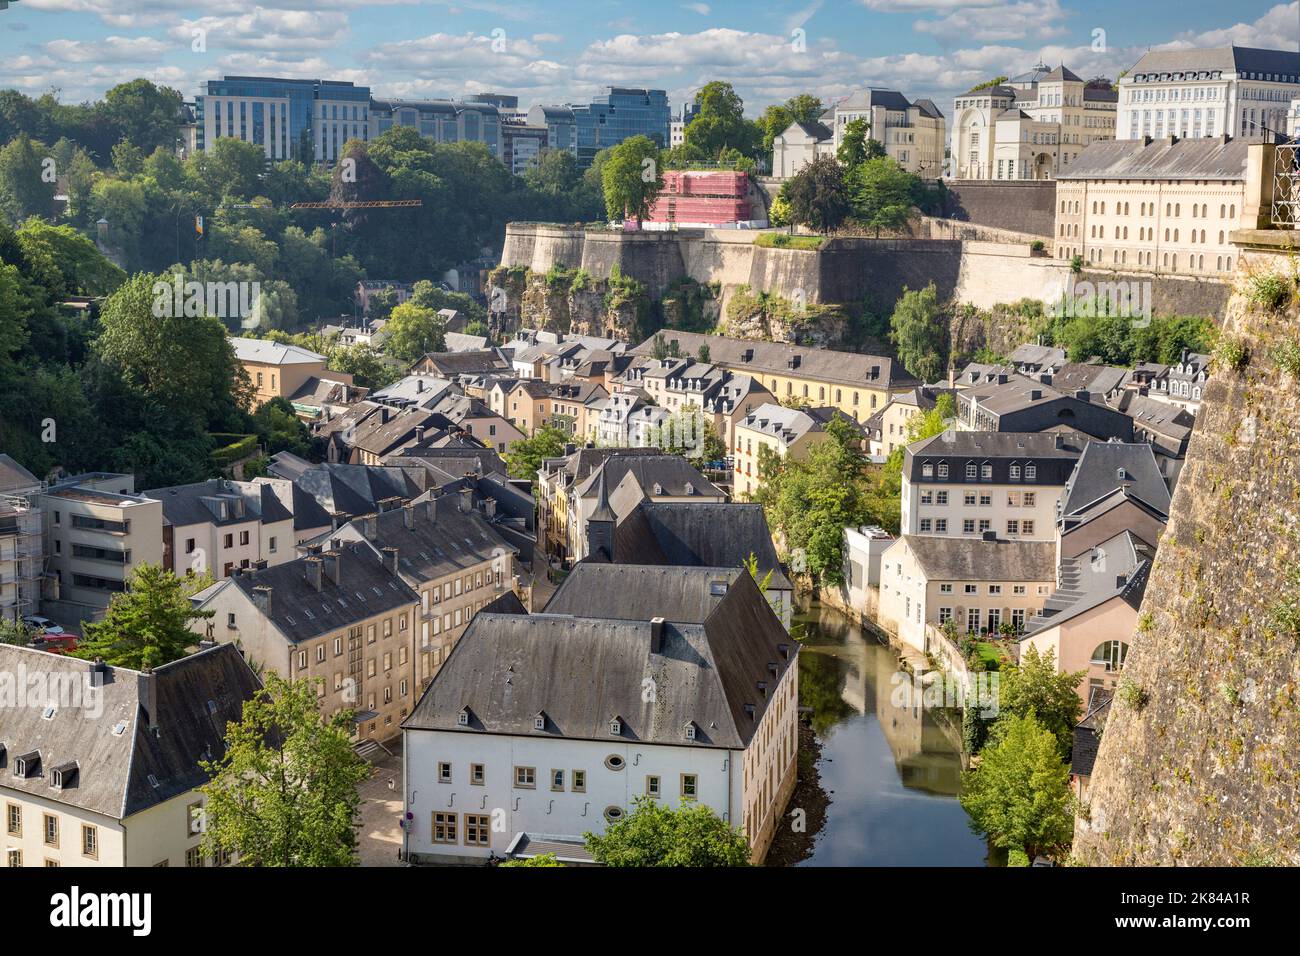 La Ville de Luxembourg et de l'Alzette, Luxembourg. Banque D'Images